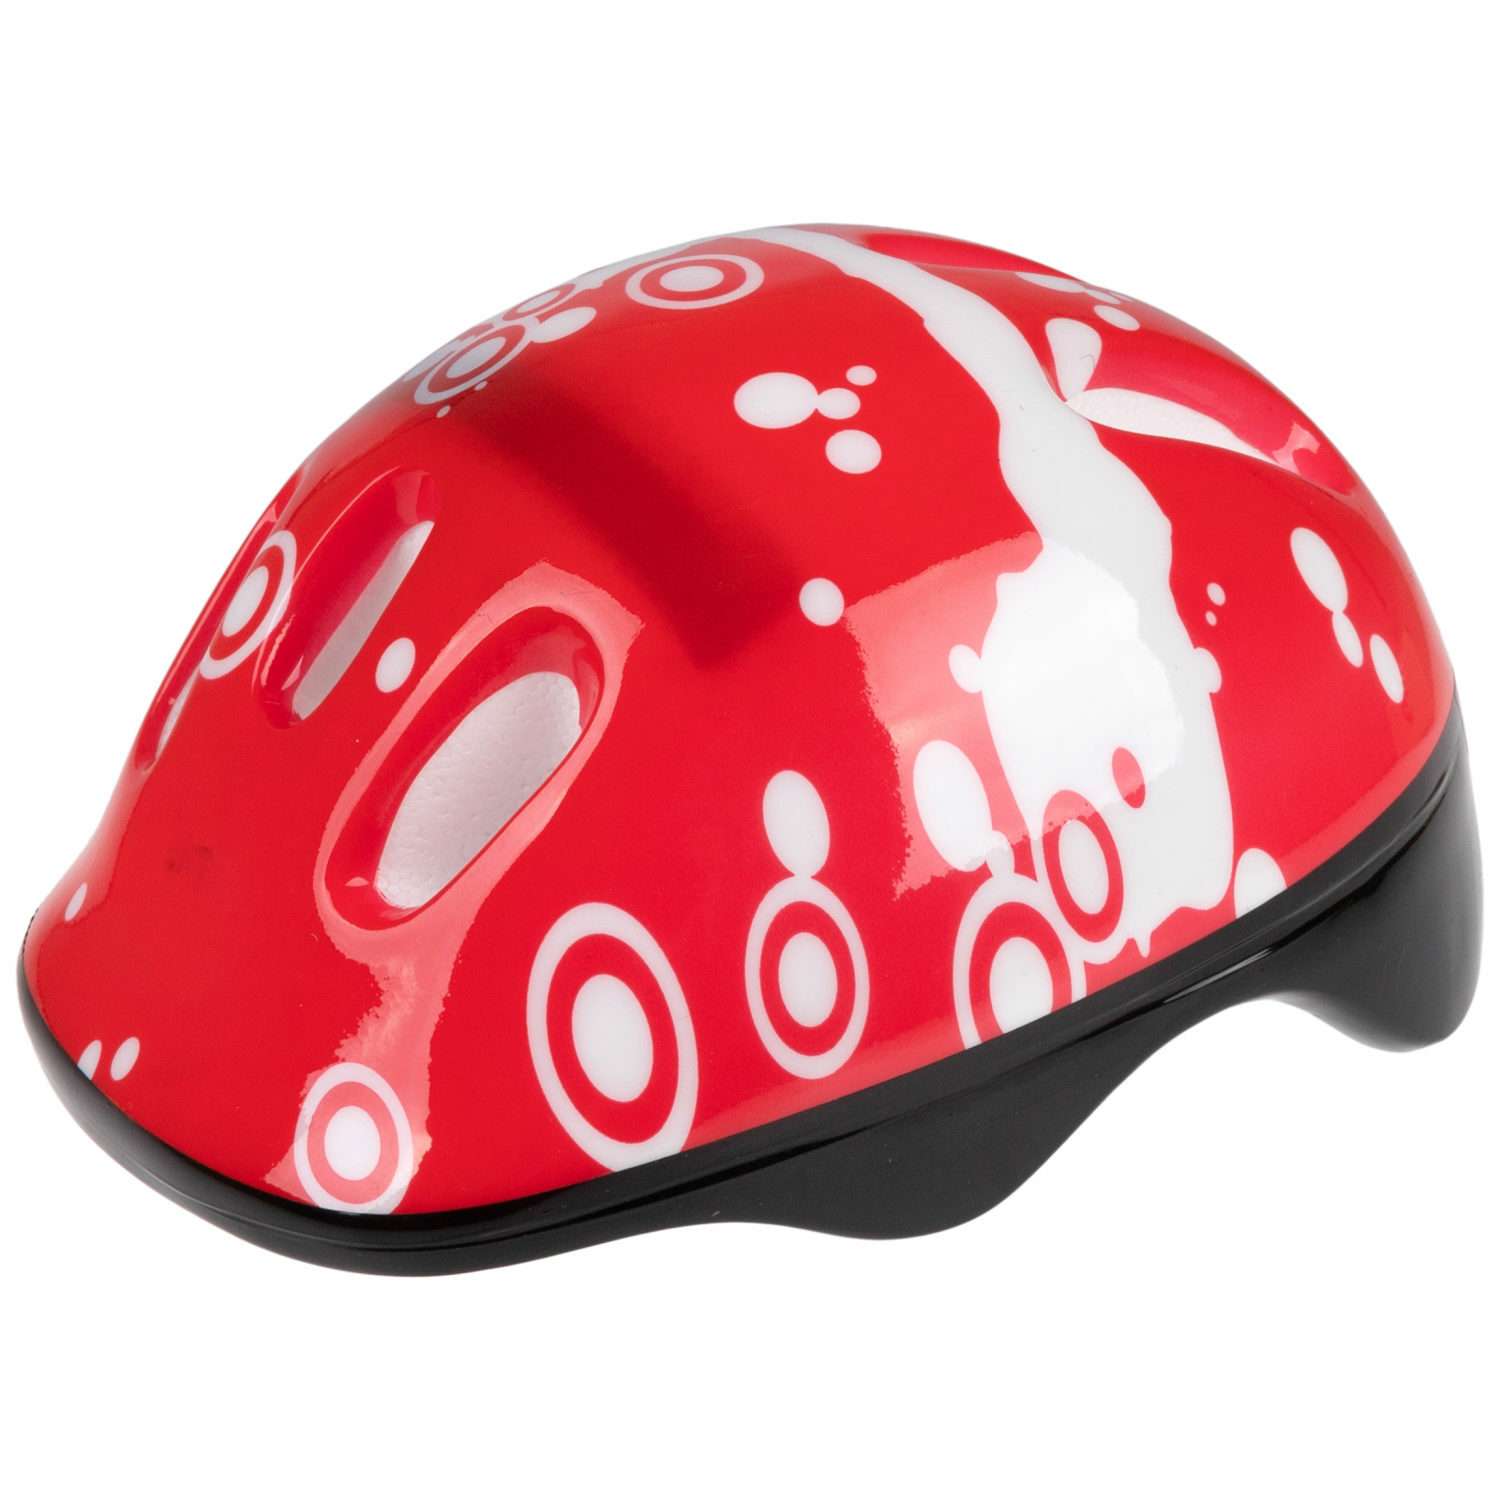 Ролики Navigator детские раздвижные 34 - 37 размер с защитой и шлемом красный - фото 12